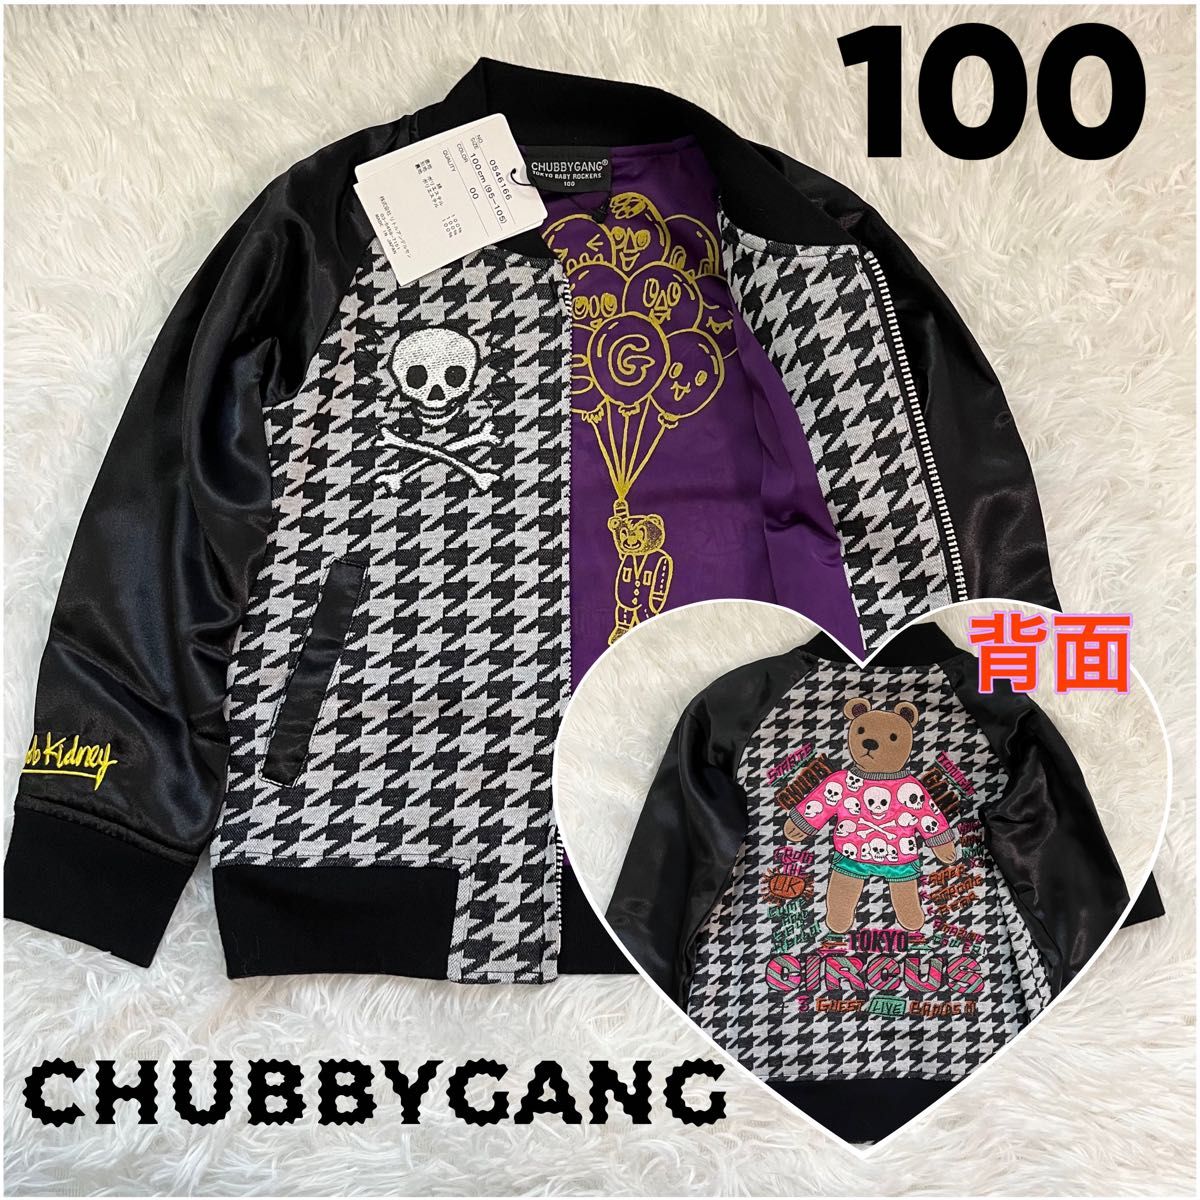 【タグ付き新品】CHUBBY GANG チャビーギャング スカジャン 100 ブラック 刺繍